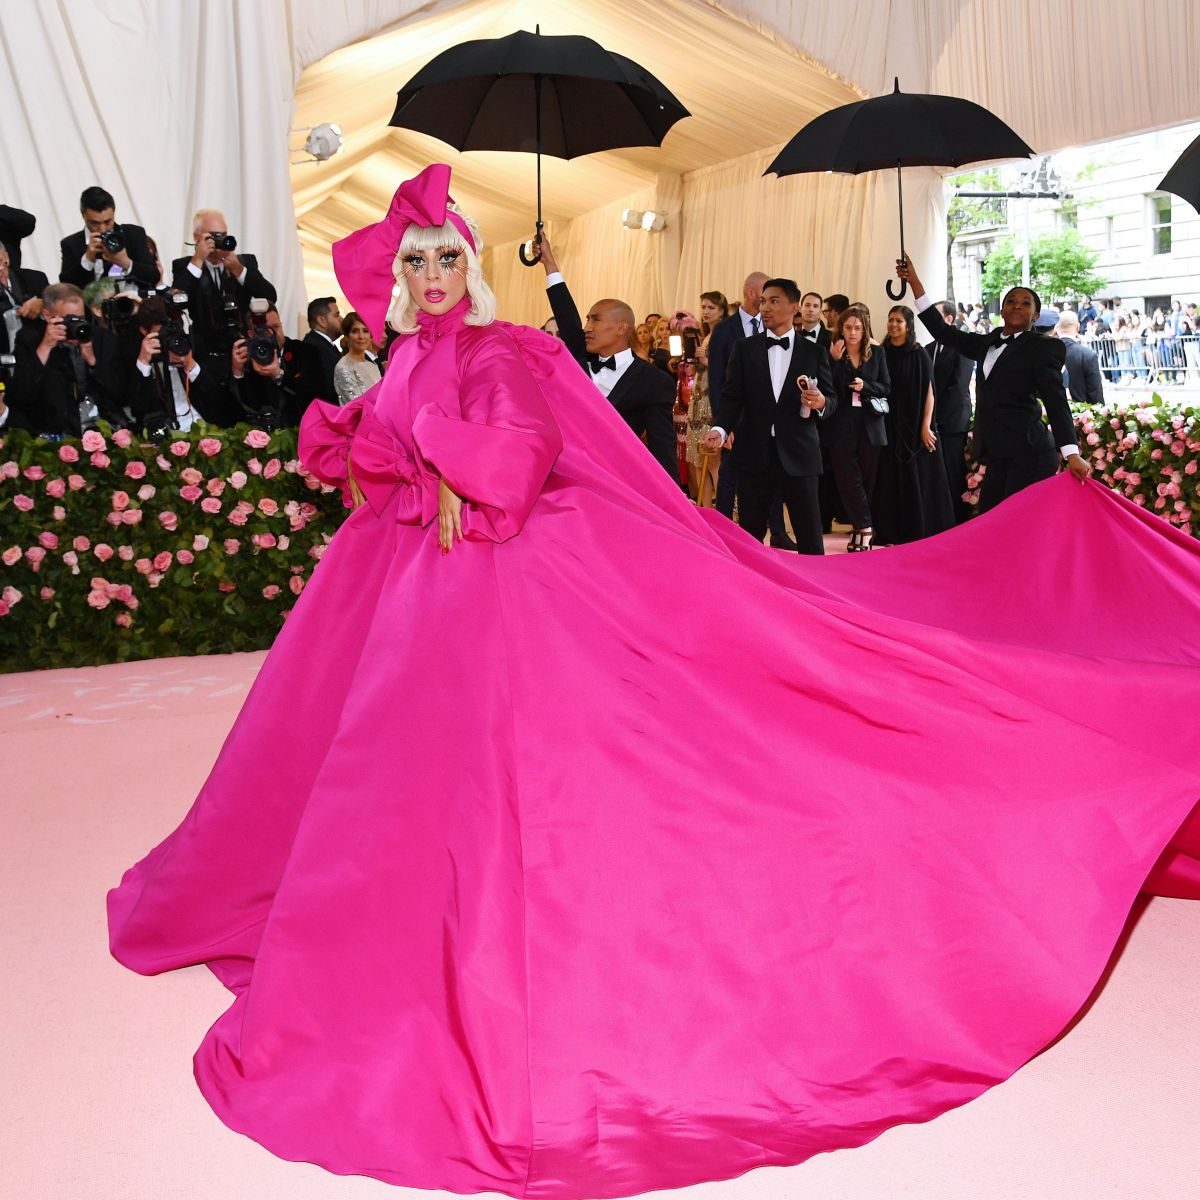 Lady Gaga còn thay đến bốn bộ trang phục trong vòng 16 phút. Cô thản nhiên cởi hết lớp này đến lớp khác để lộ một bộ trang phục mới toanh ẩn phía trong mỗi lần rải bước trên thảm đỏ.